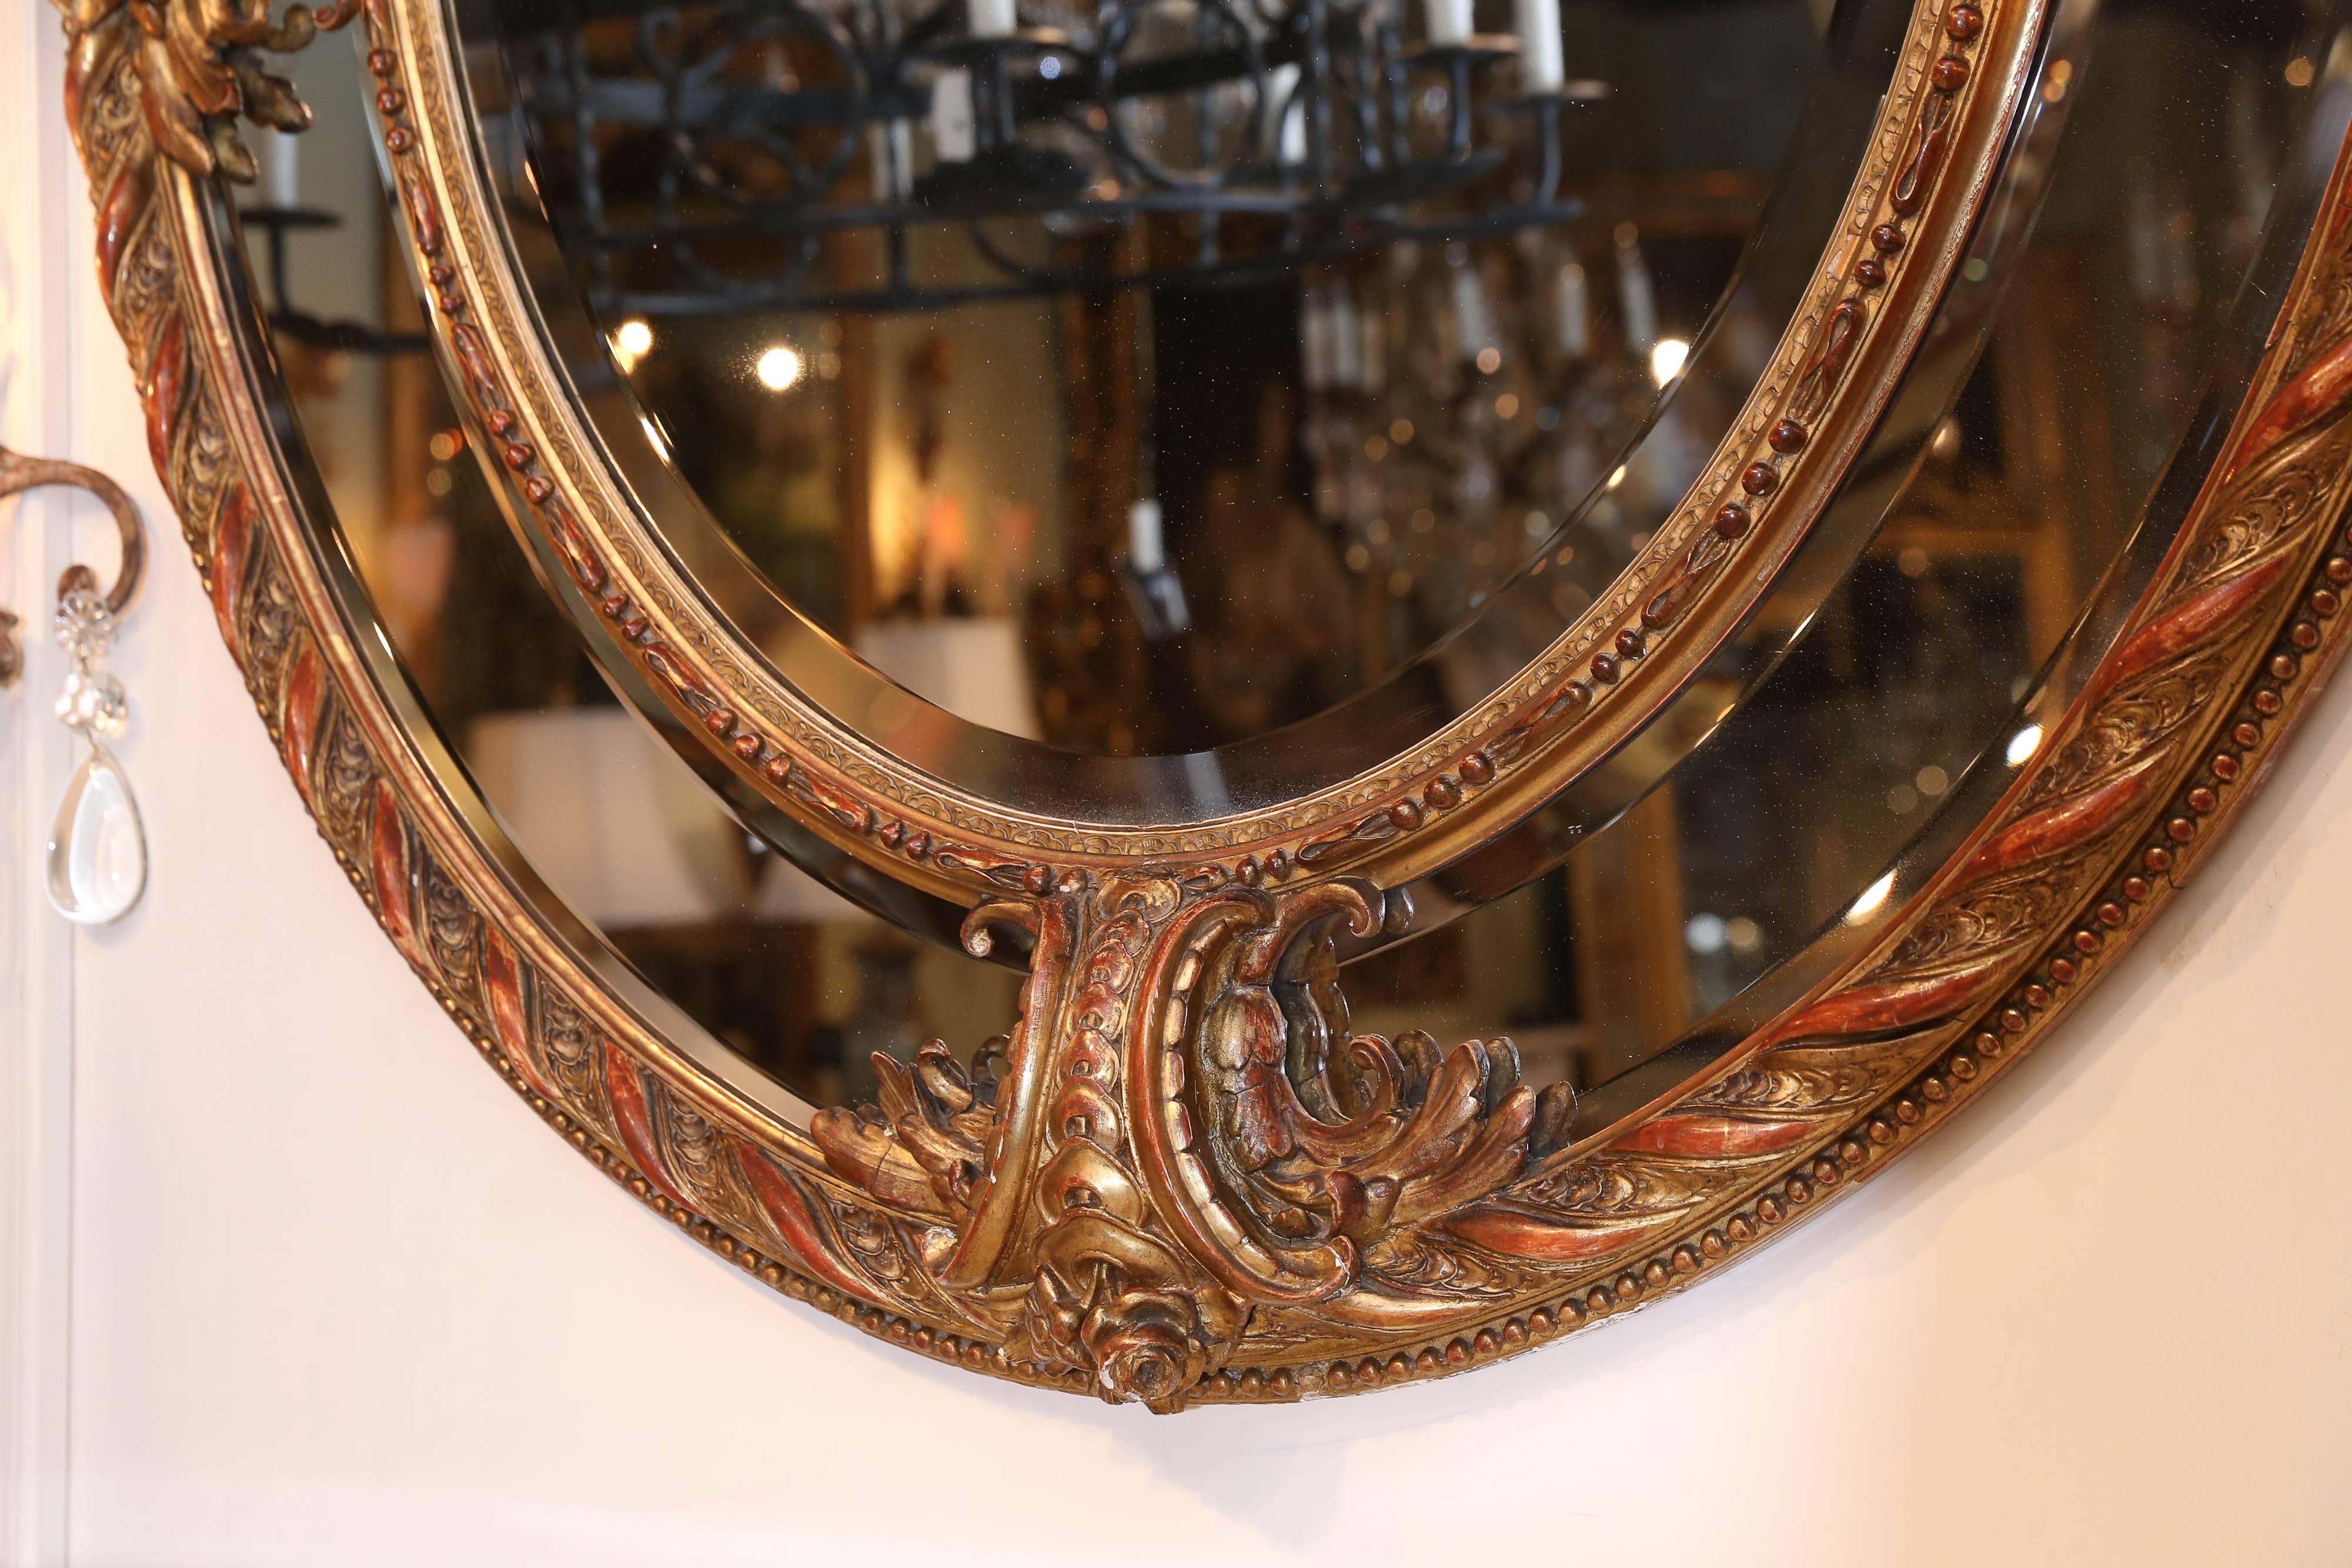 miroir ovale doré du 19ème siècle avec une plaque centrale biseautée dans une bordure
Entouré d'une plaque biseautée en escalier. De style Louis XVI ;
Ayant un ruban élaboré et un écusson floral.